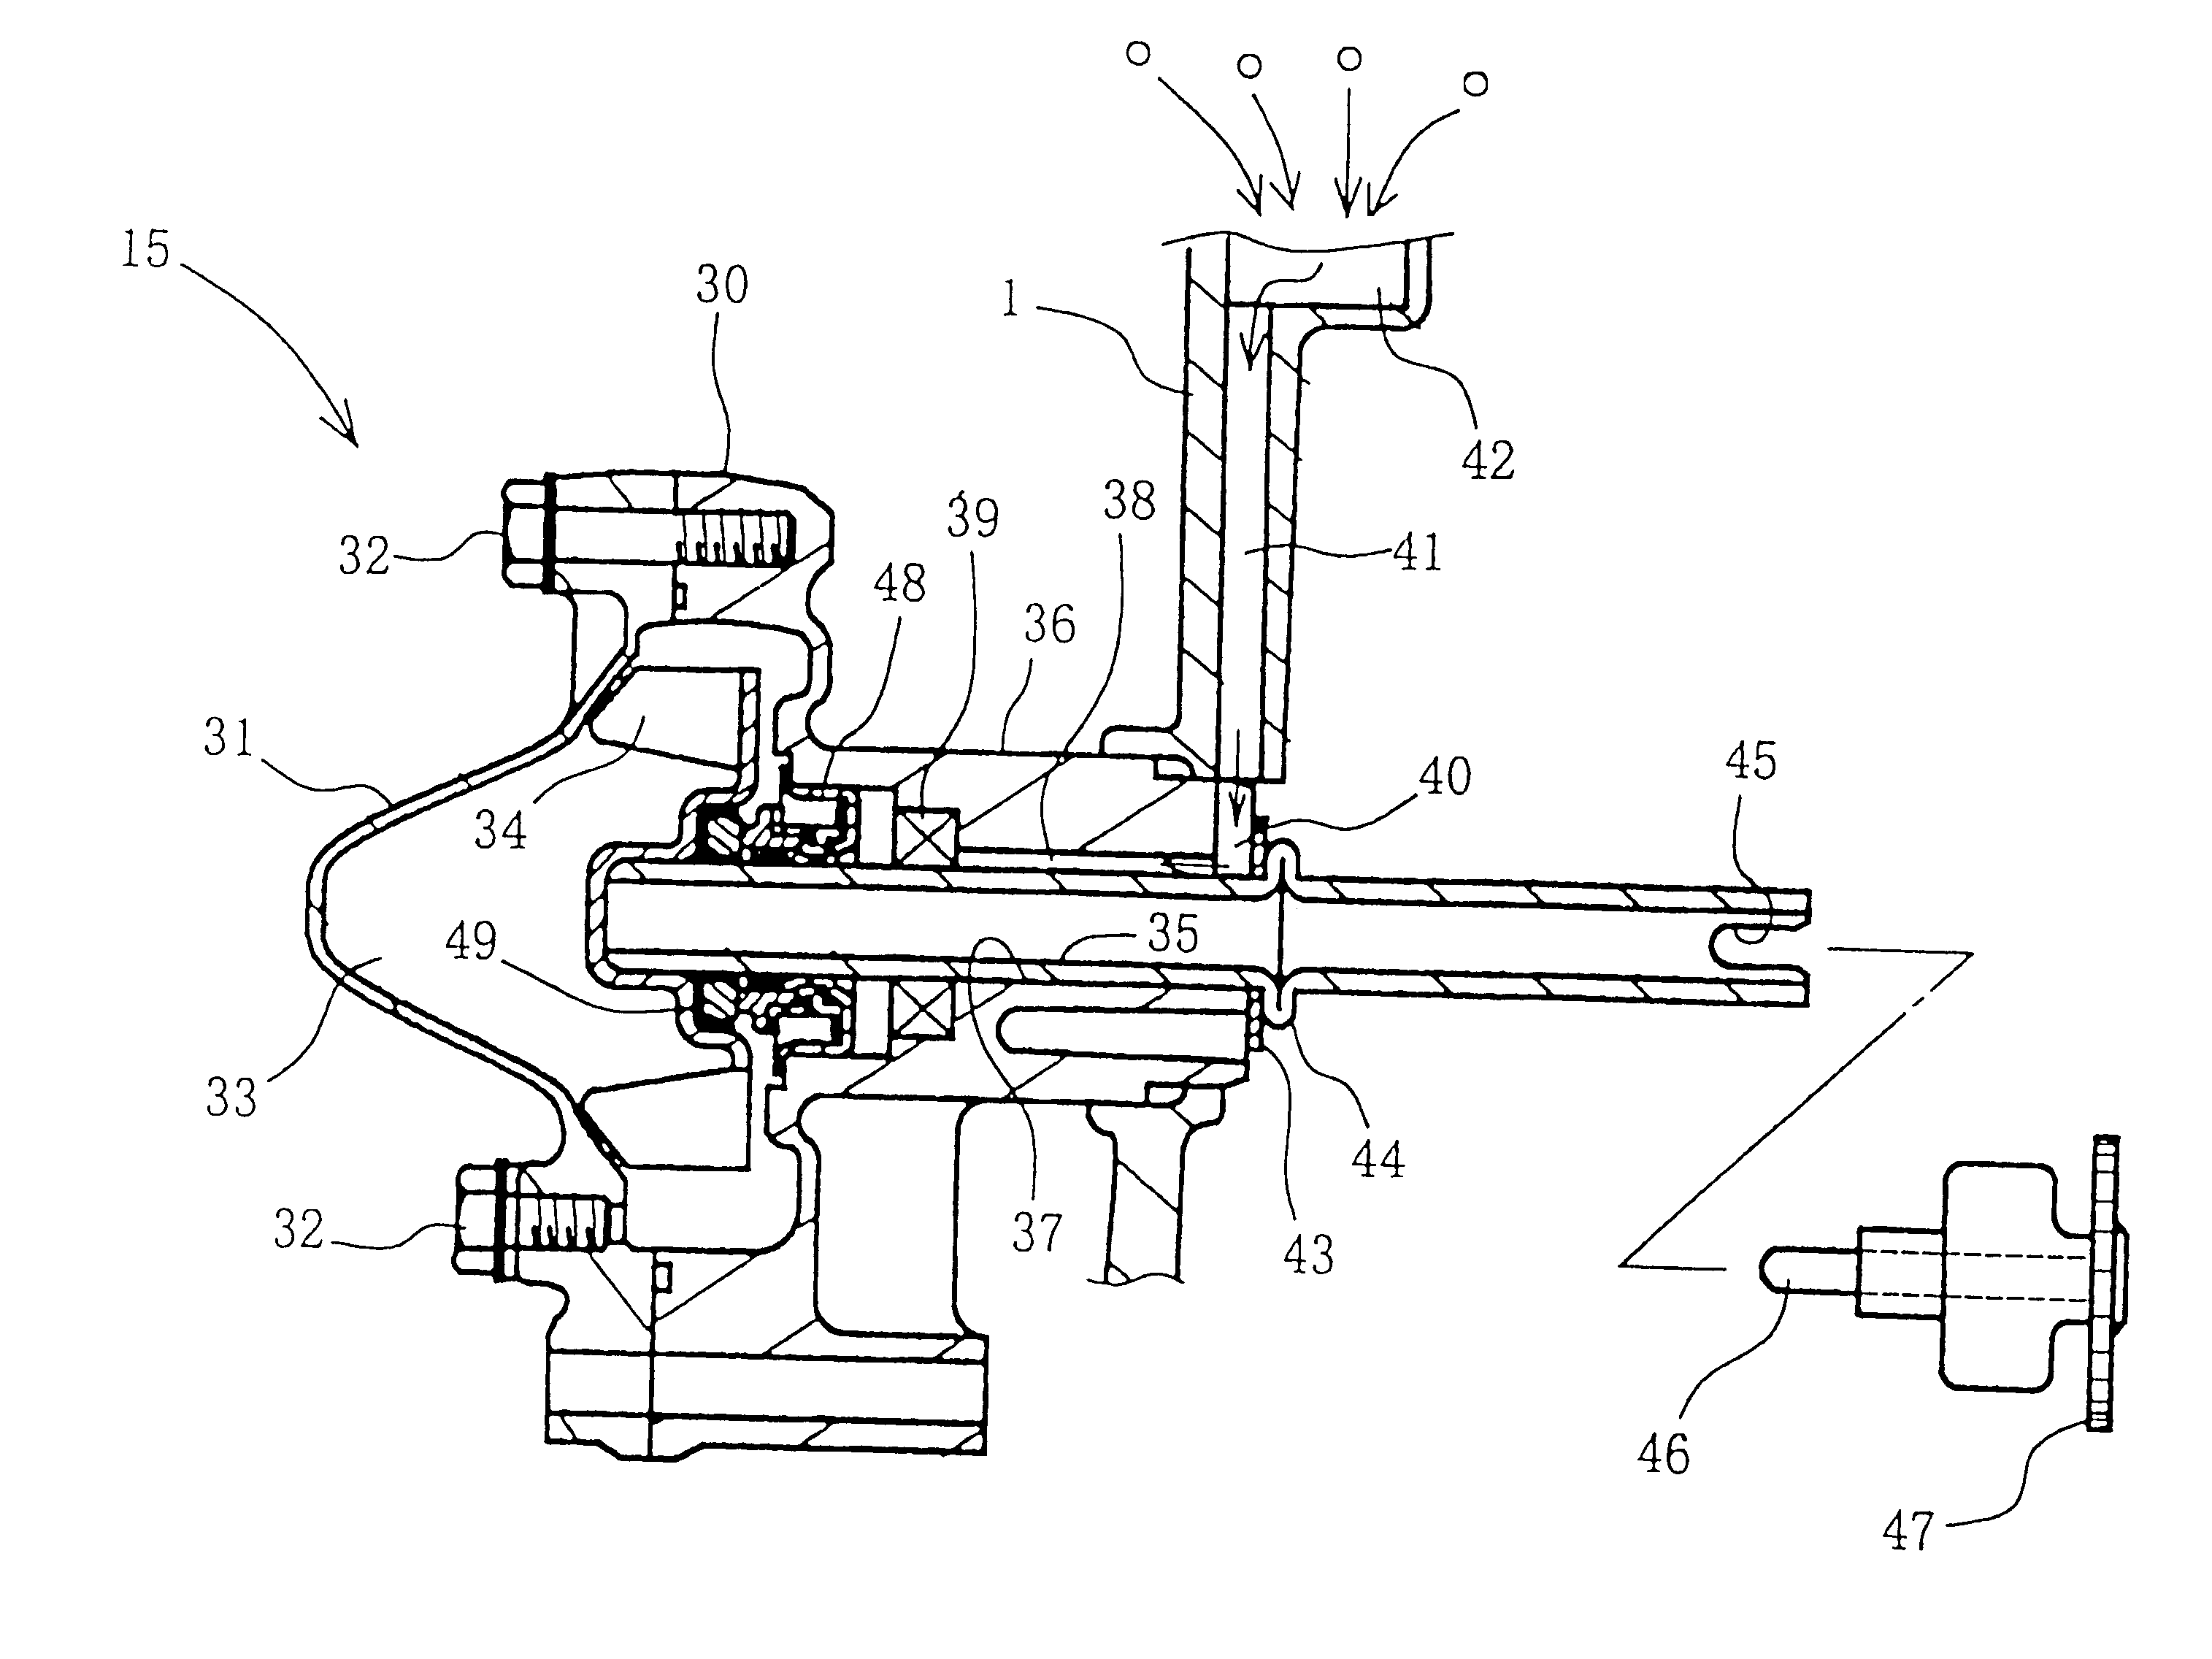 Engine water pump structure